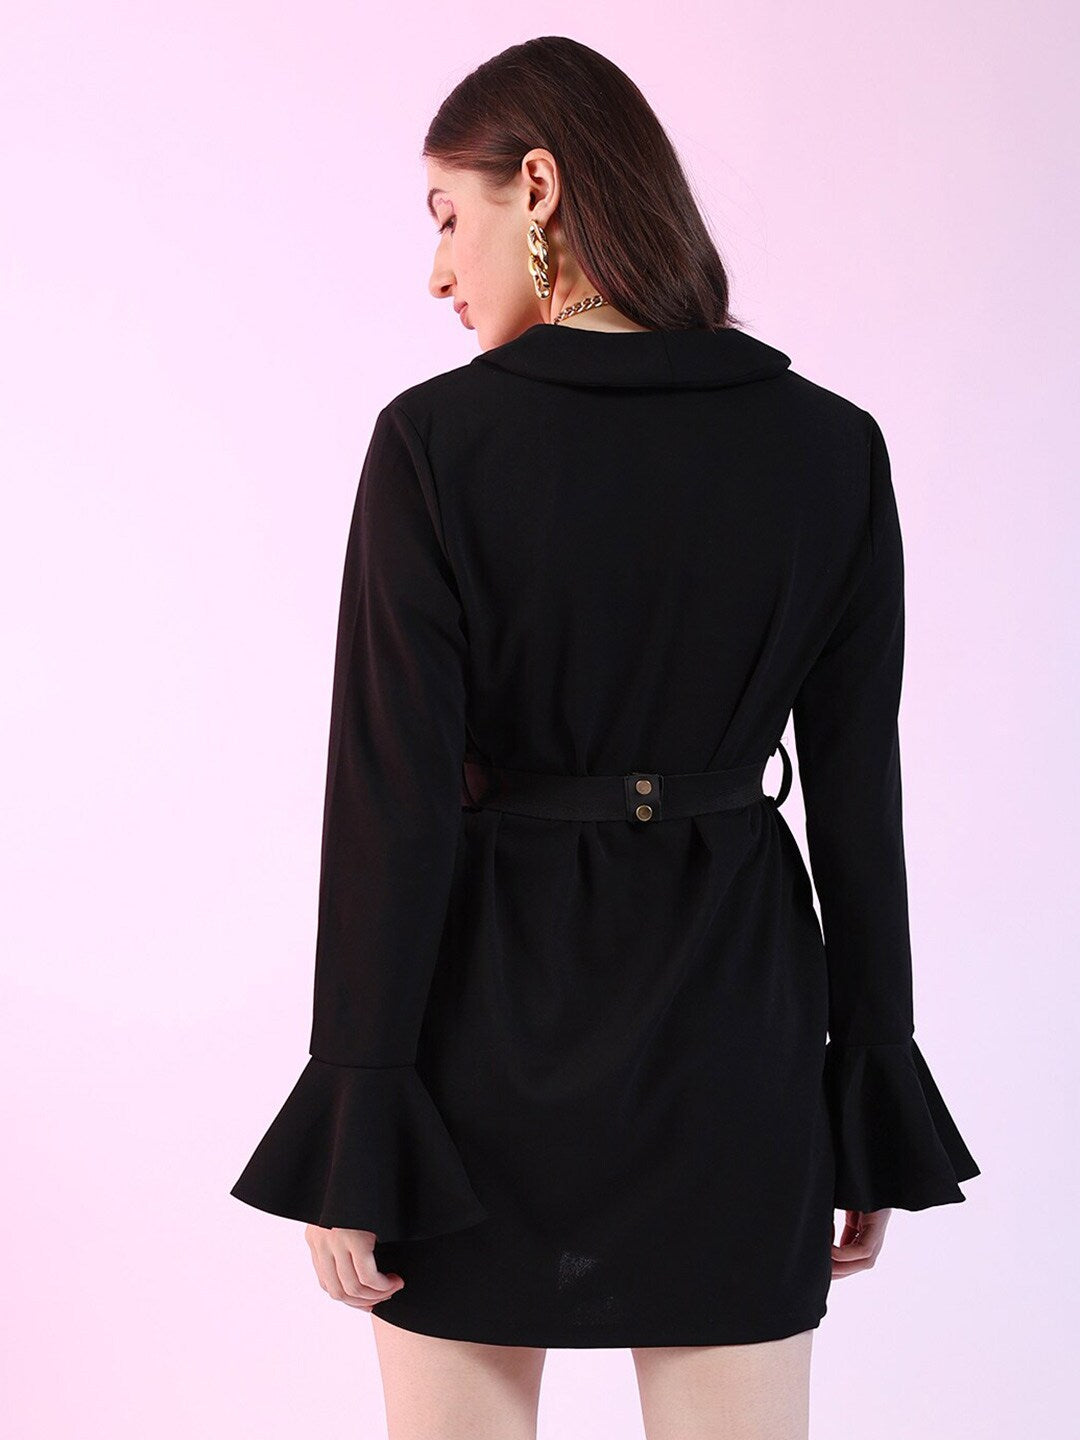 Shop Women A-Line Blazer Dress Online.